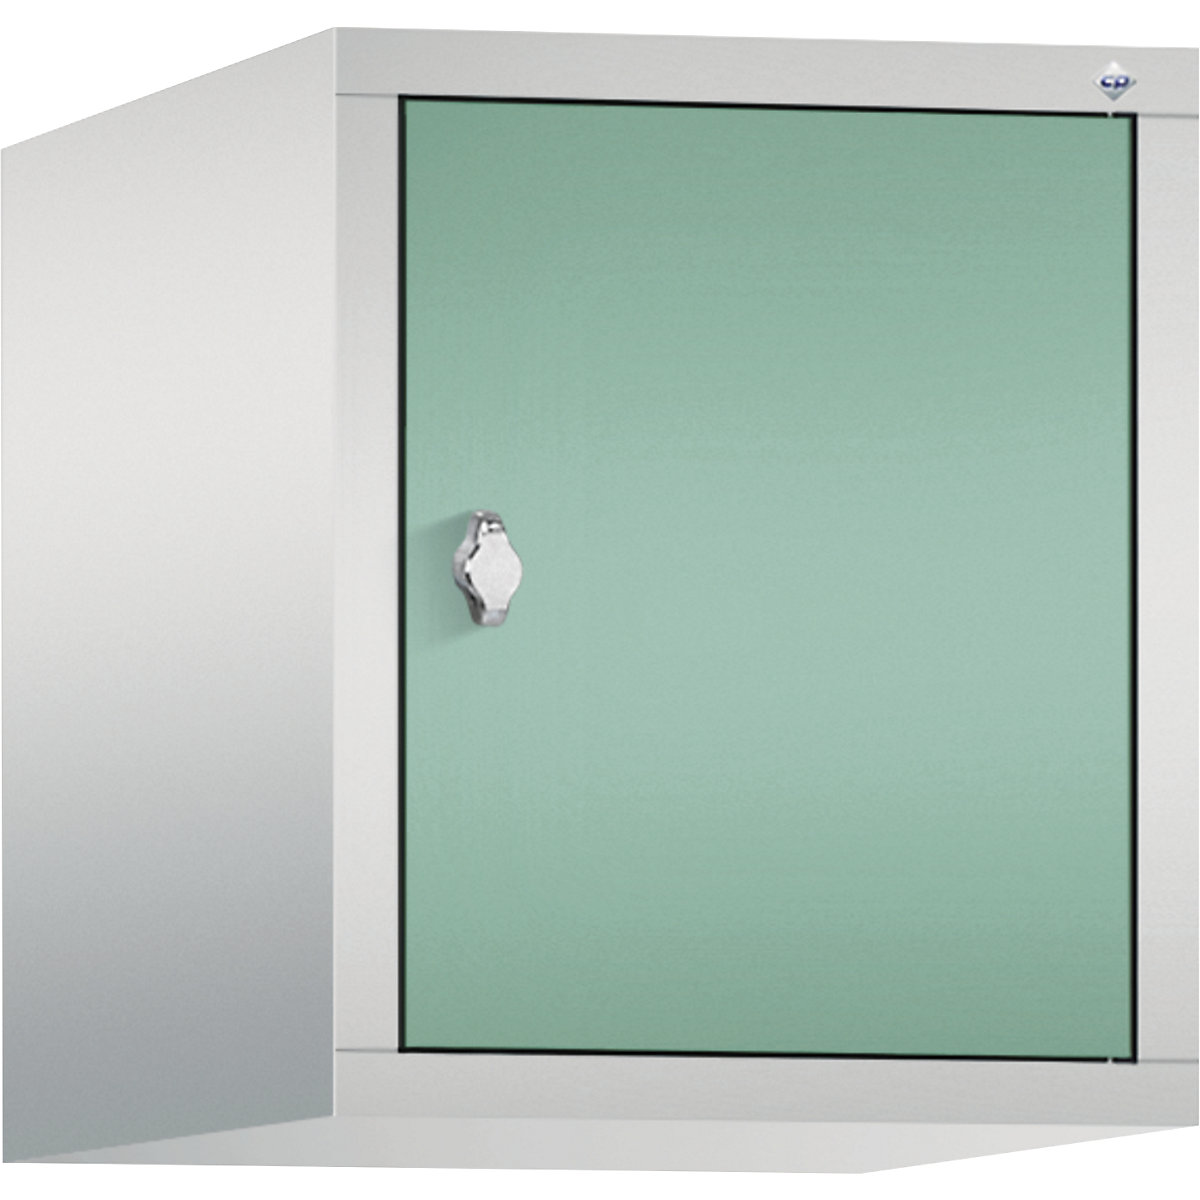 C+P – Altillo CLASSIC, 1 compartimento, anchura de compartimento 400 mm, gris luminoso / verde luminoso